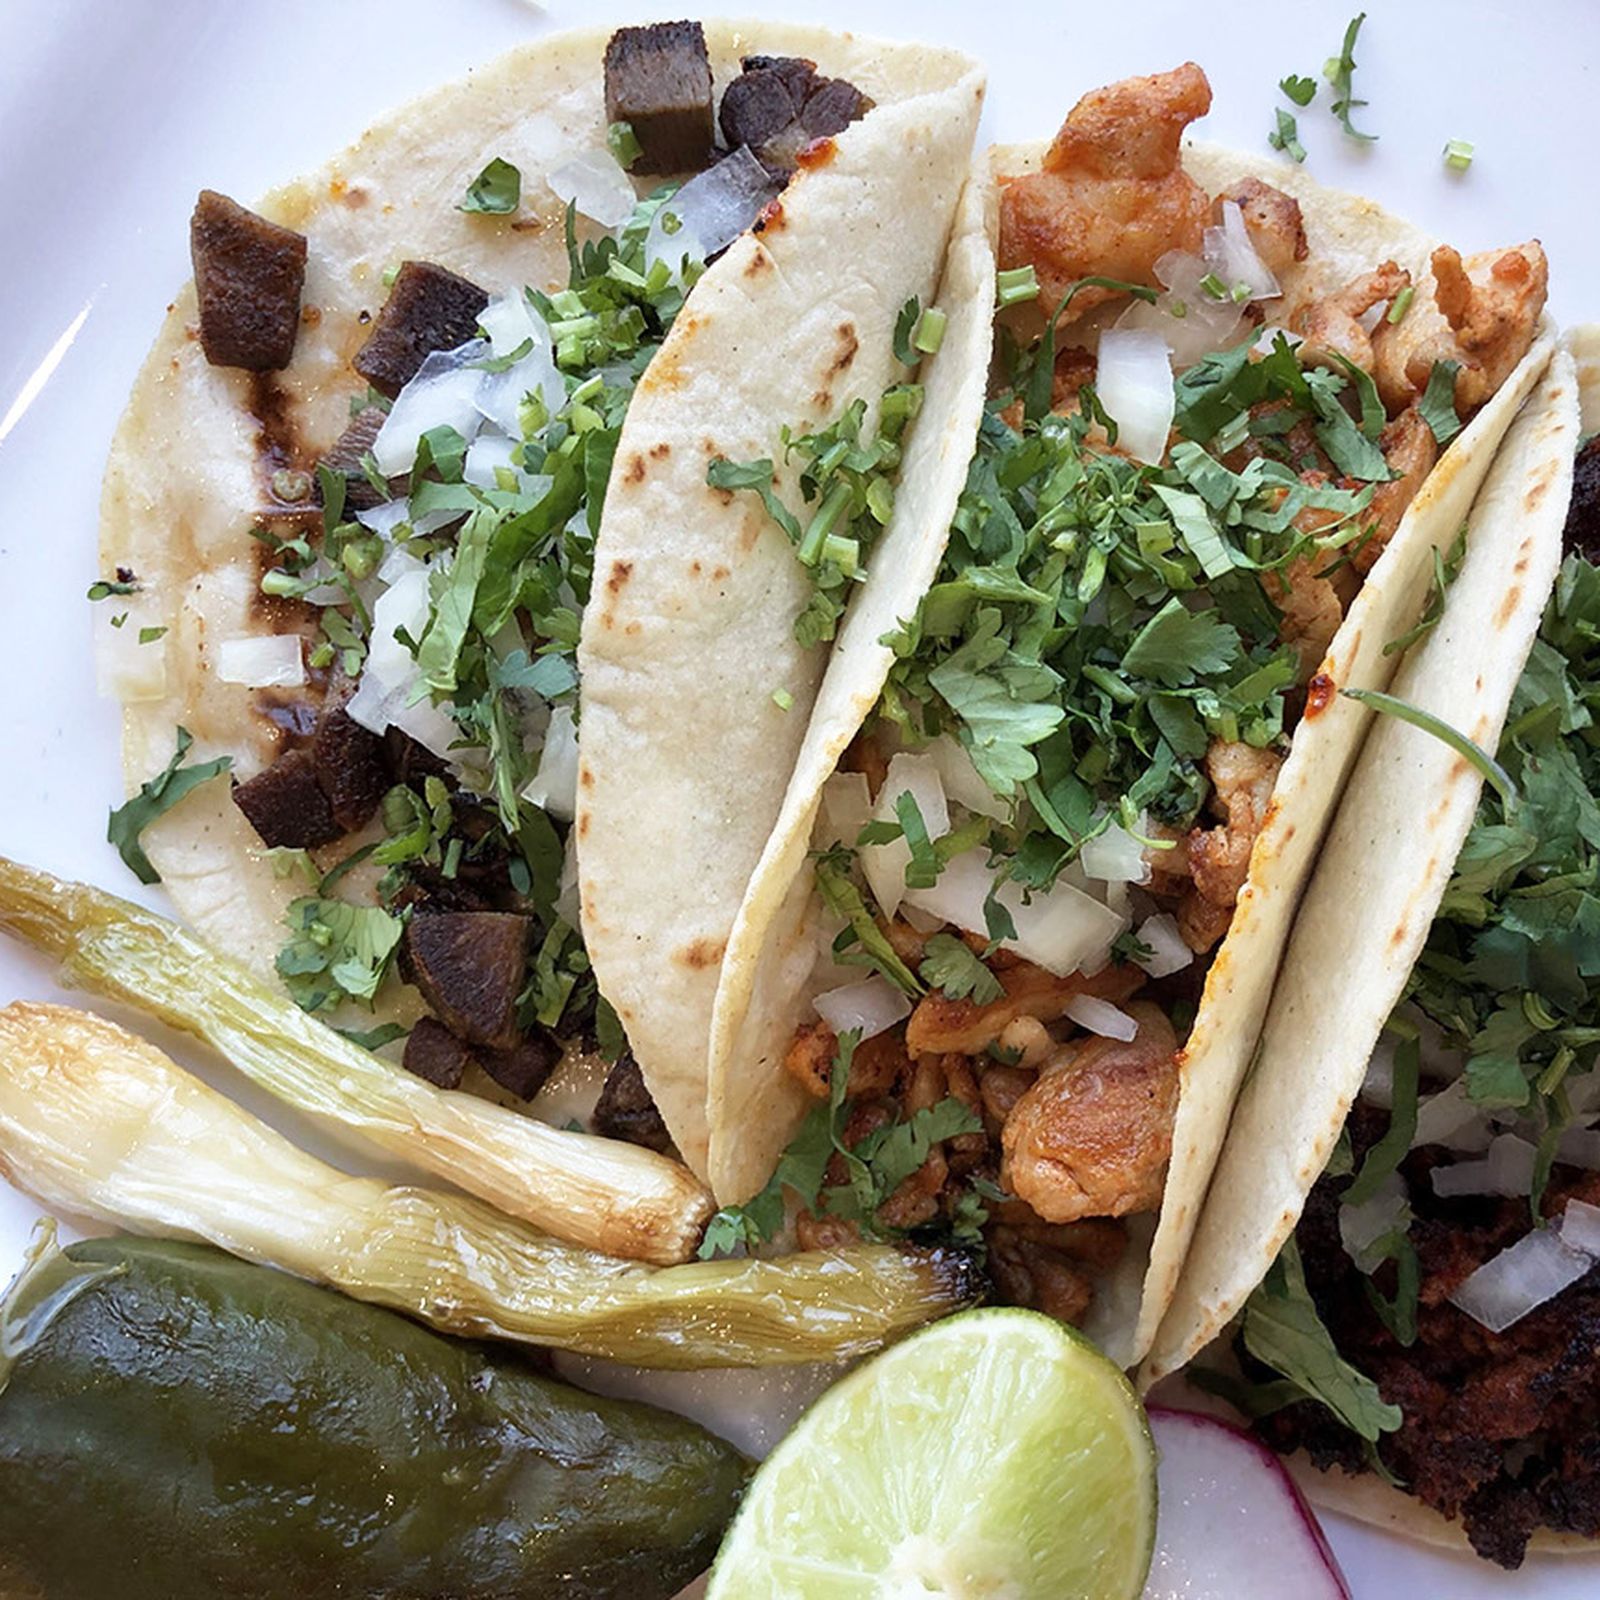 Tacos El Nevado - Mexican Restaurant in NC